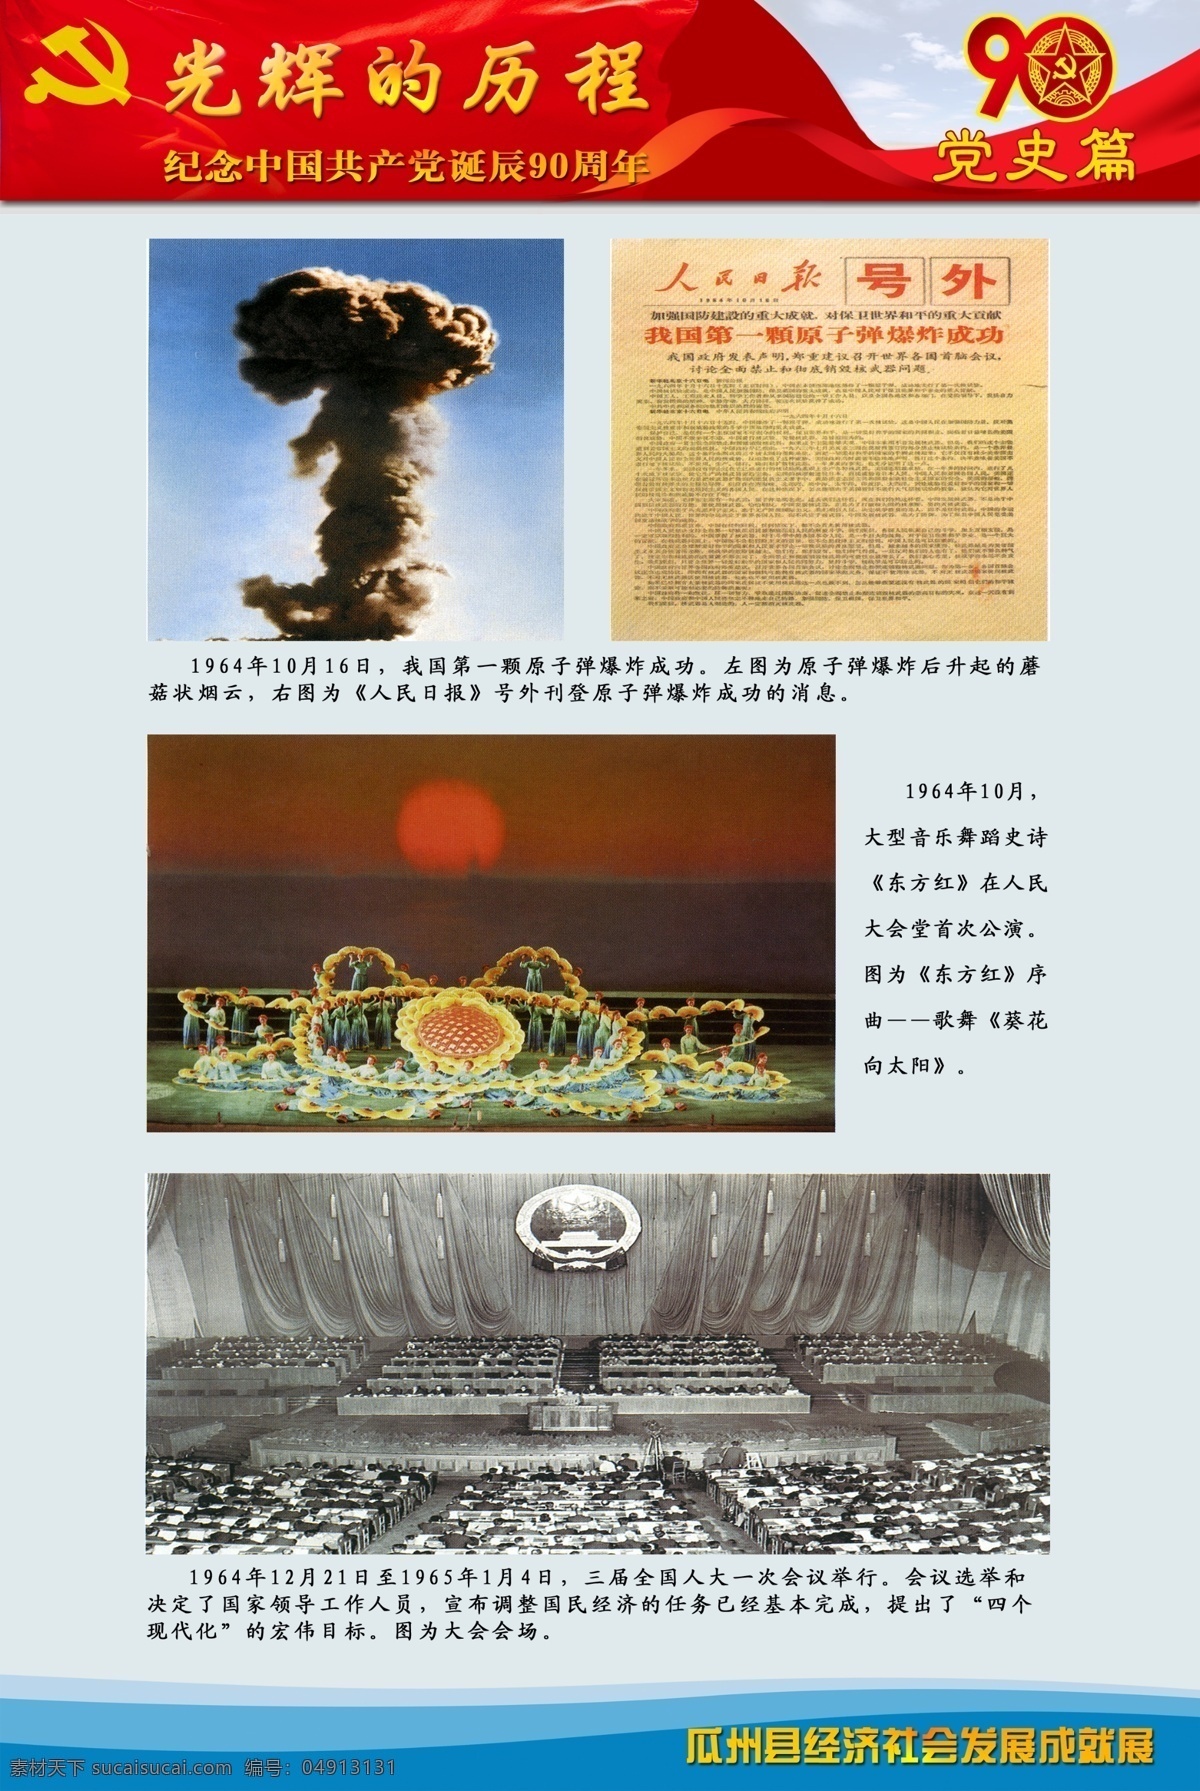 光辉的历程 党史篇 党史 葵花向太阳 第一颗 原子弹 三 届 人大 次 会议 分层 源文件